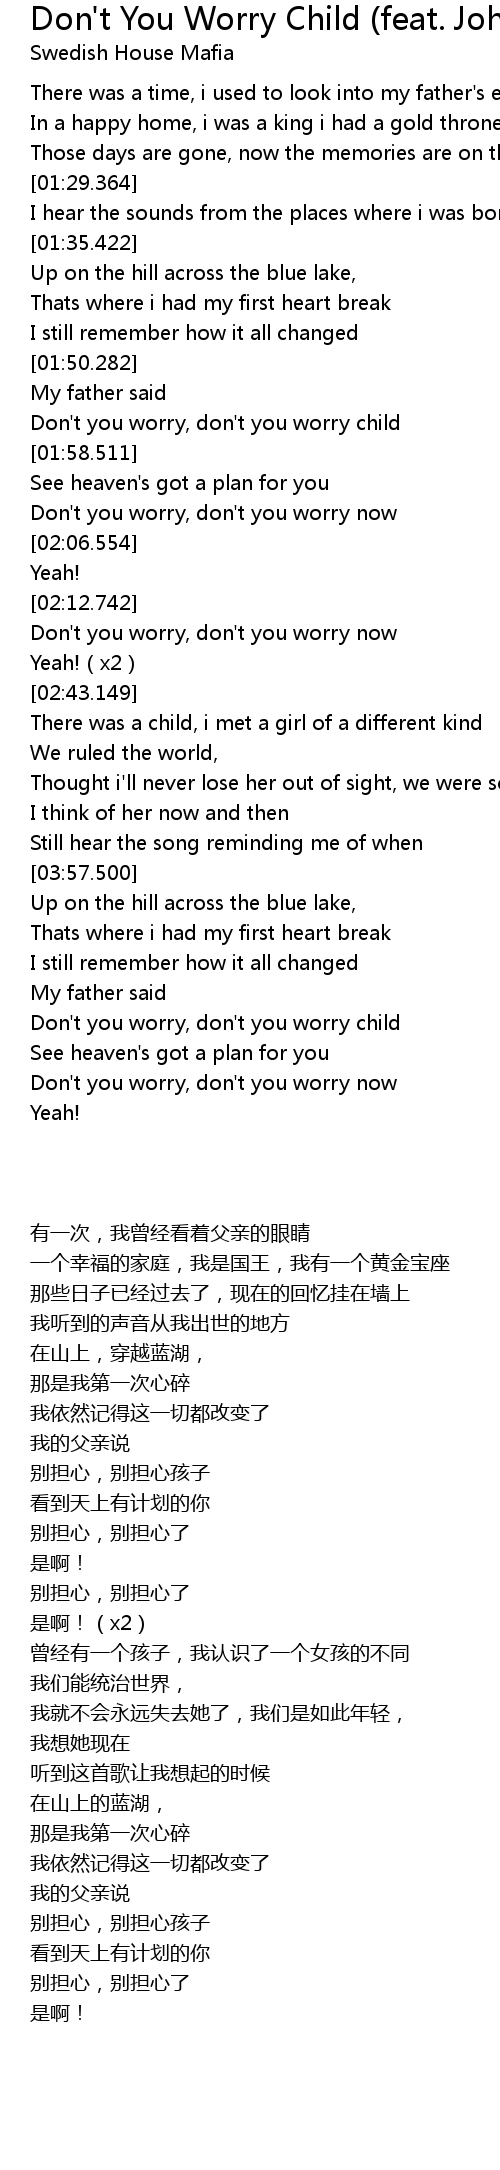 Don T You Worry Child Feat John Martin Lyrics Follow Lyrics